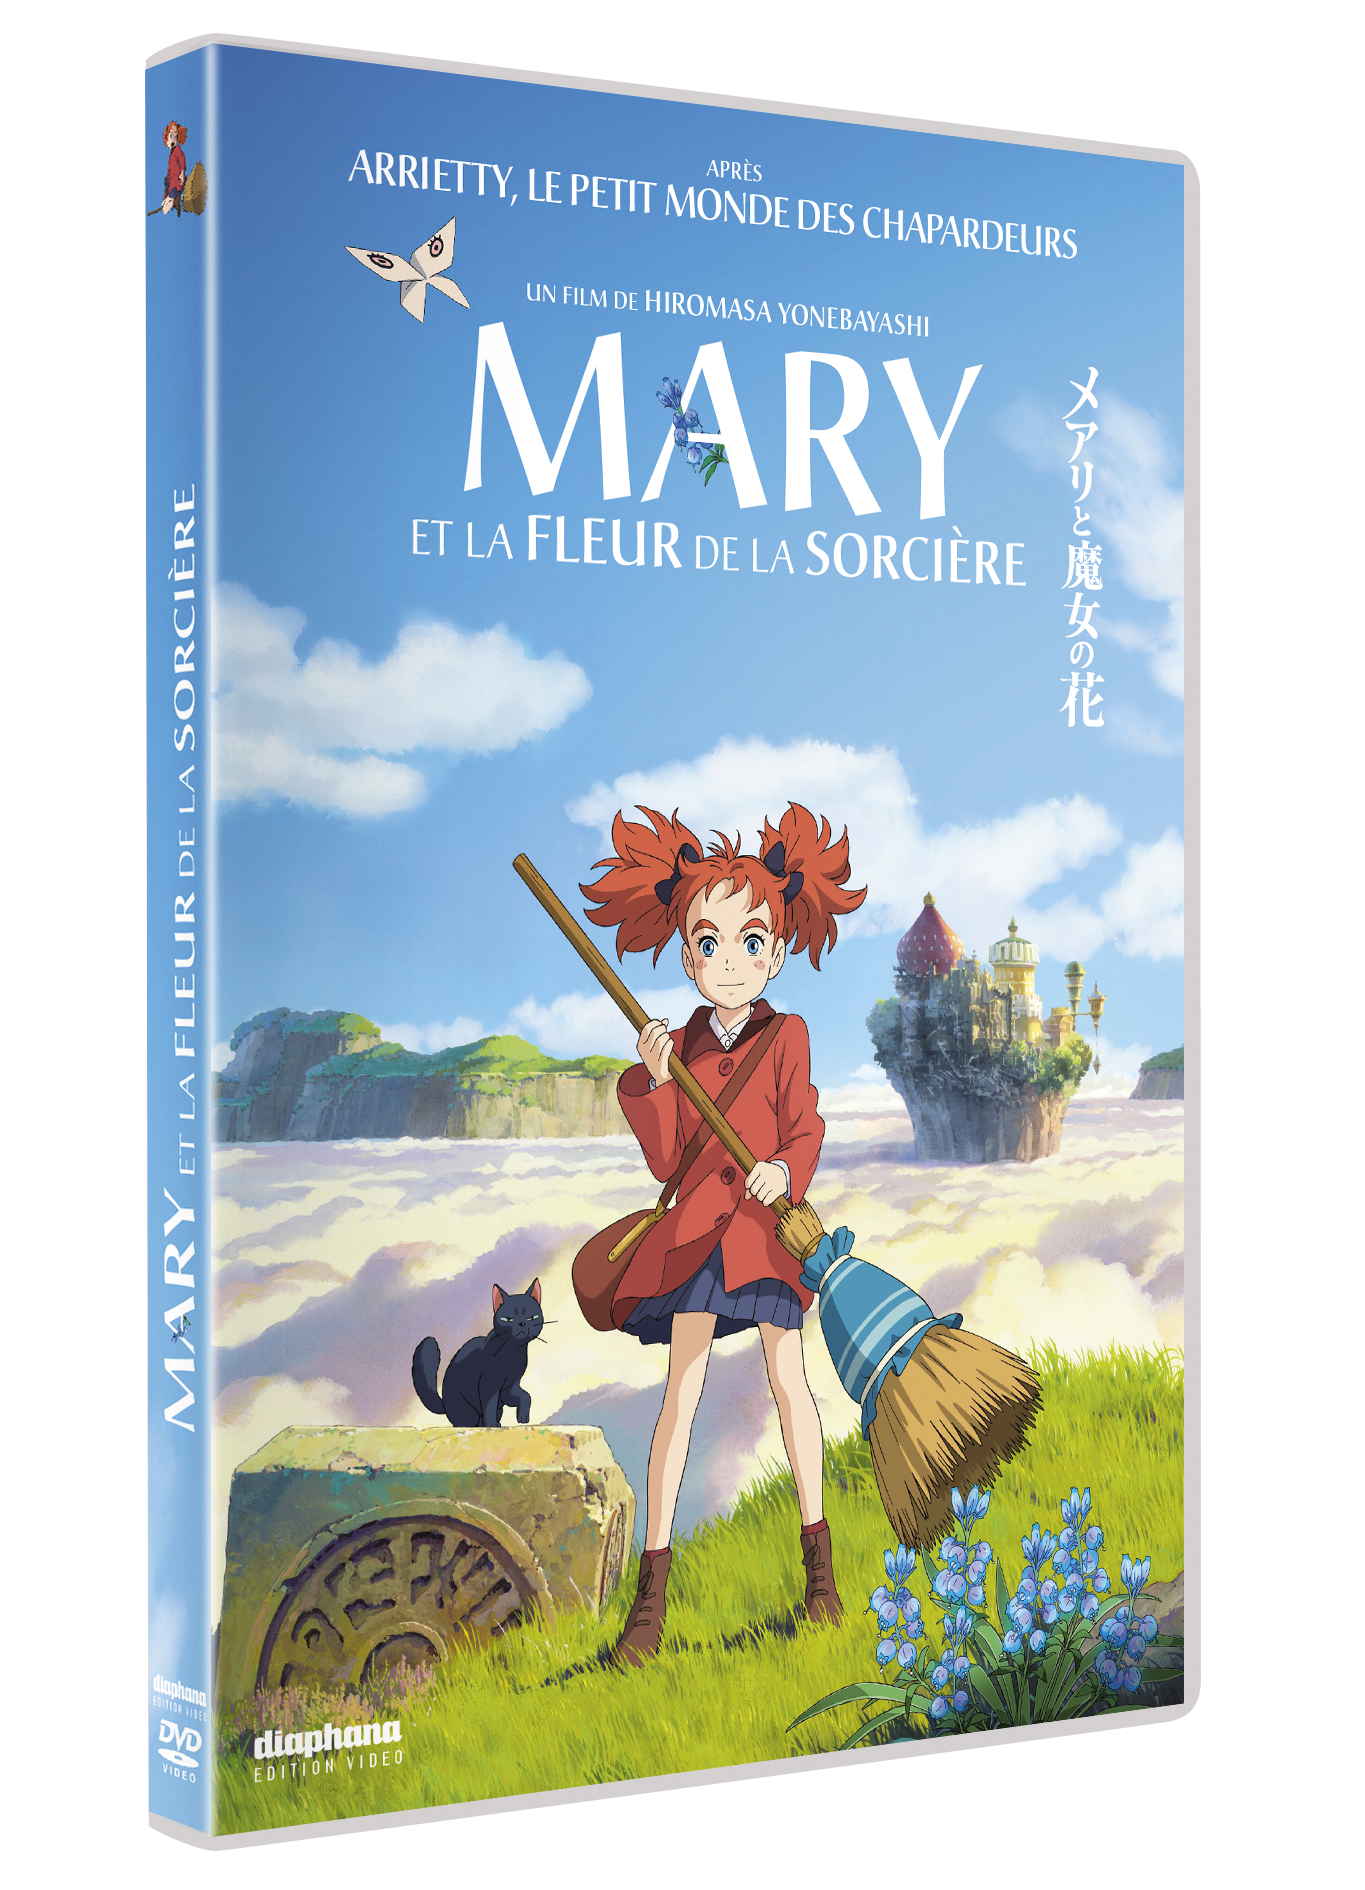 Sortie DVD Mary et la fleur de la sorcière: quand Ponoc ne rivalise pas-  vraiment avec Ghibli - Baz'art : Des films, des livres